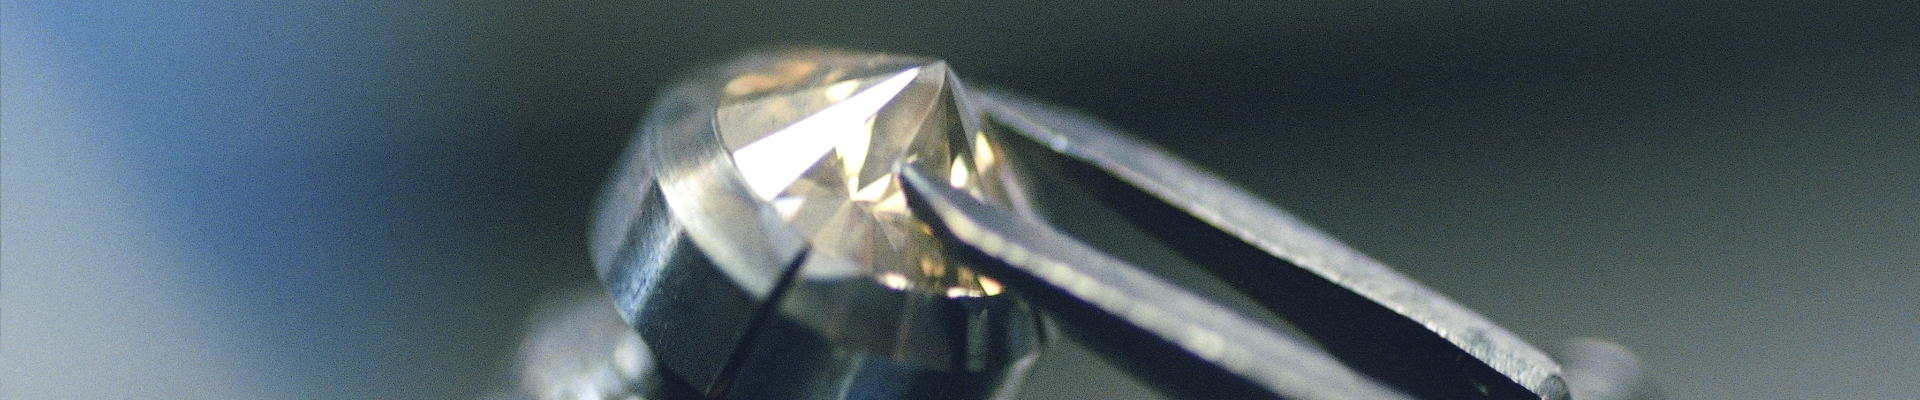 DIAMONDAS Diamant wird geschliffen